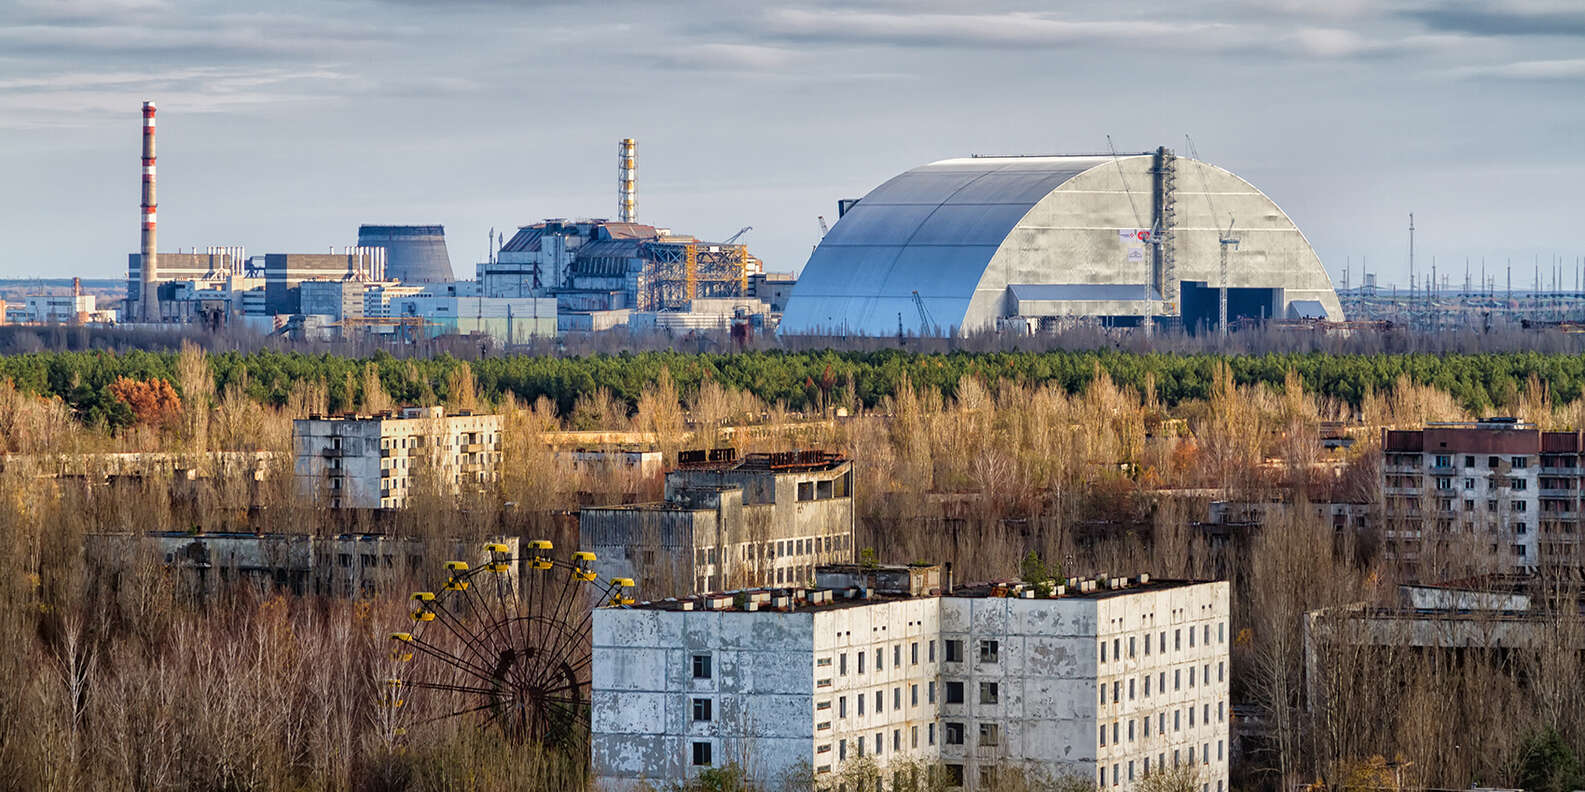 Rusya’nın nükleer santrali ele geçirmesinin ardından gözler Çernobil’e çevrildi